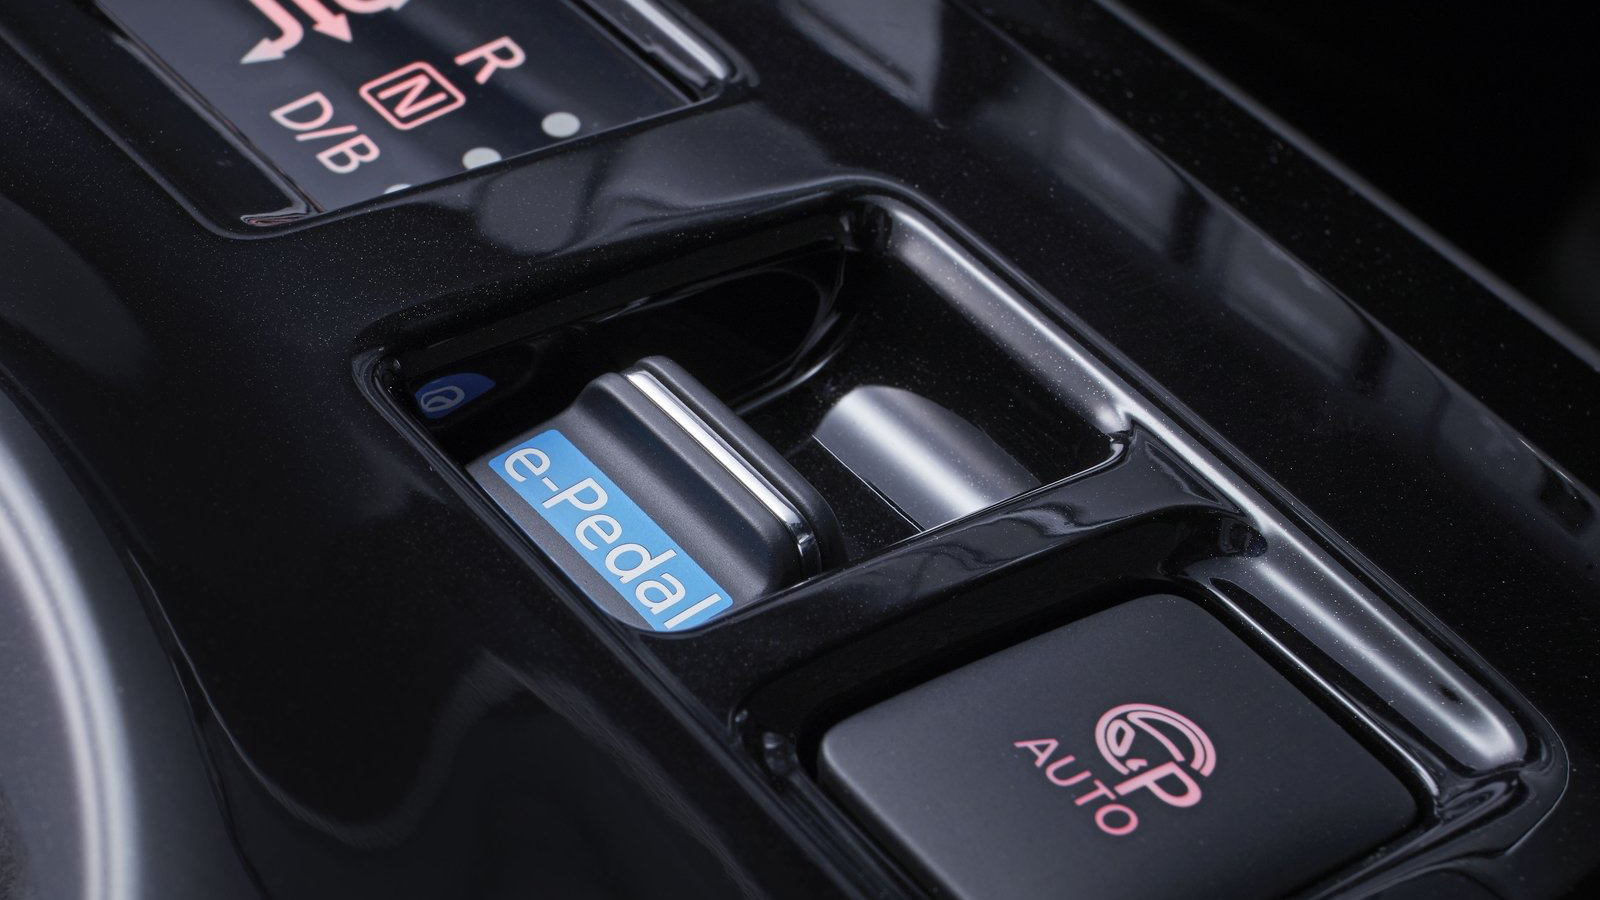 Το e-pedal της εικόνας που ανήκει στο Nissan Leaf, ενεργοποιεί την πιο δυνατή ανάκτηση ενέργειας, η οποία προσφέρει παράλληλα έντονη επιβράδυνση ώστε να είναι δυνατή η οδήγηση με ένα πεντάλ.